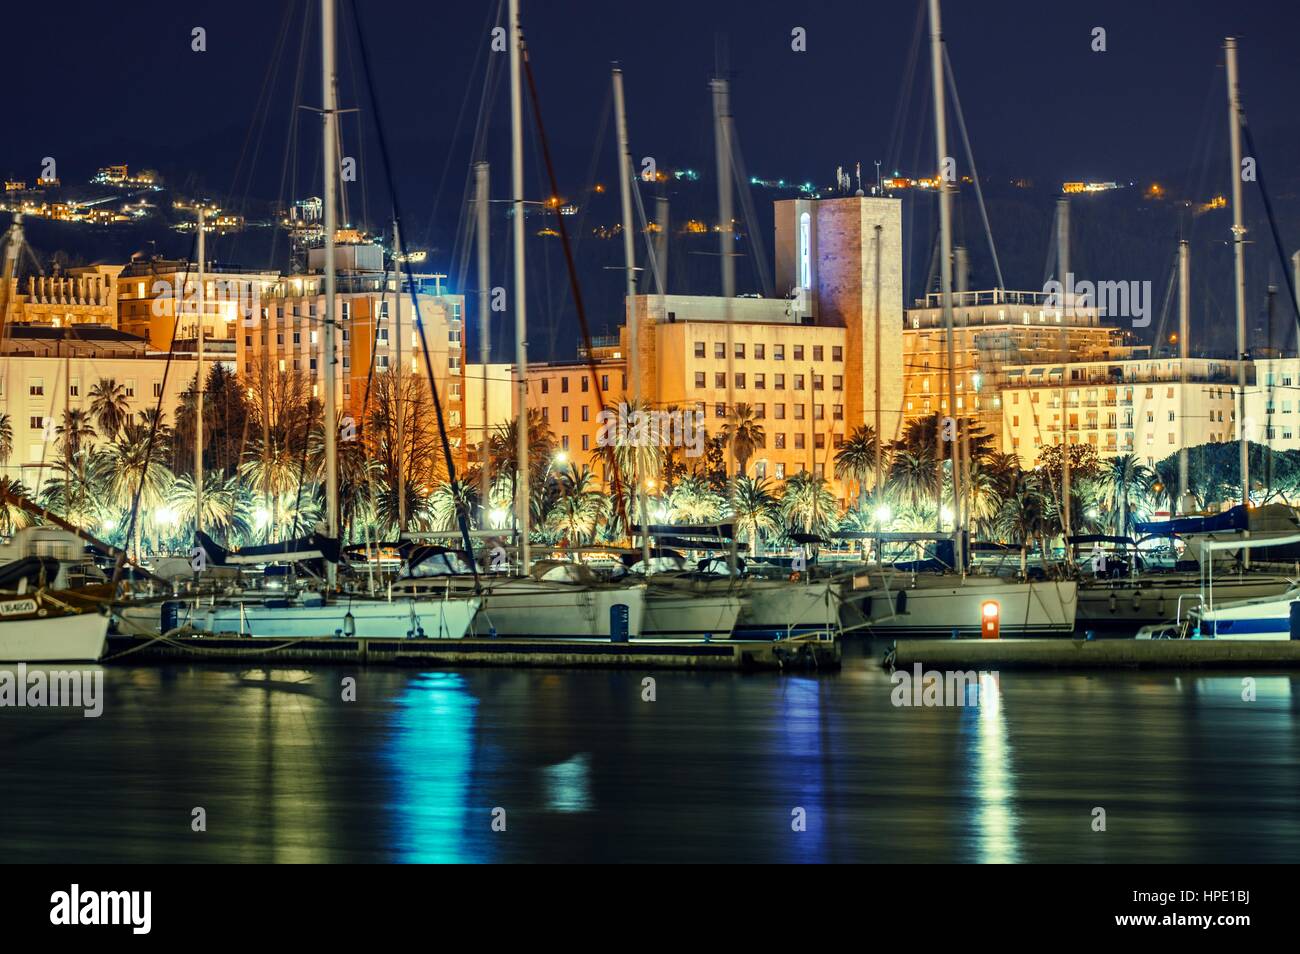 La Spezia Marina di notte, Liguria provincia dell'Italia. Marina di riflessioni. Foto Stock